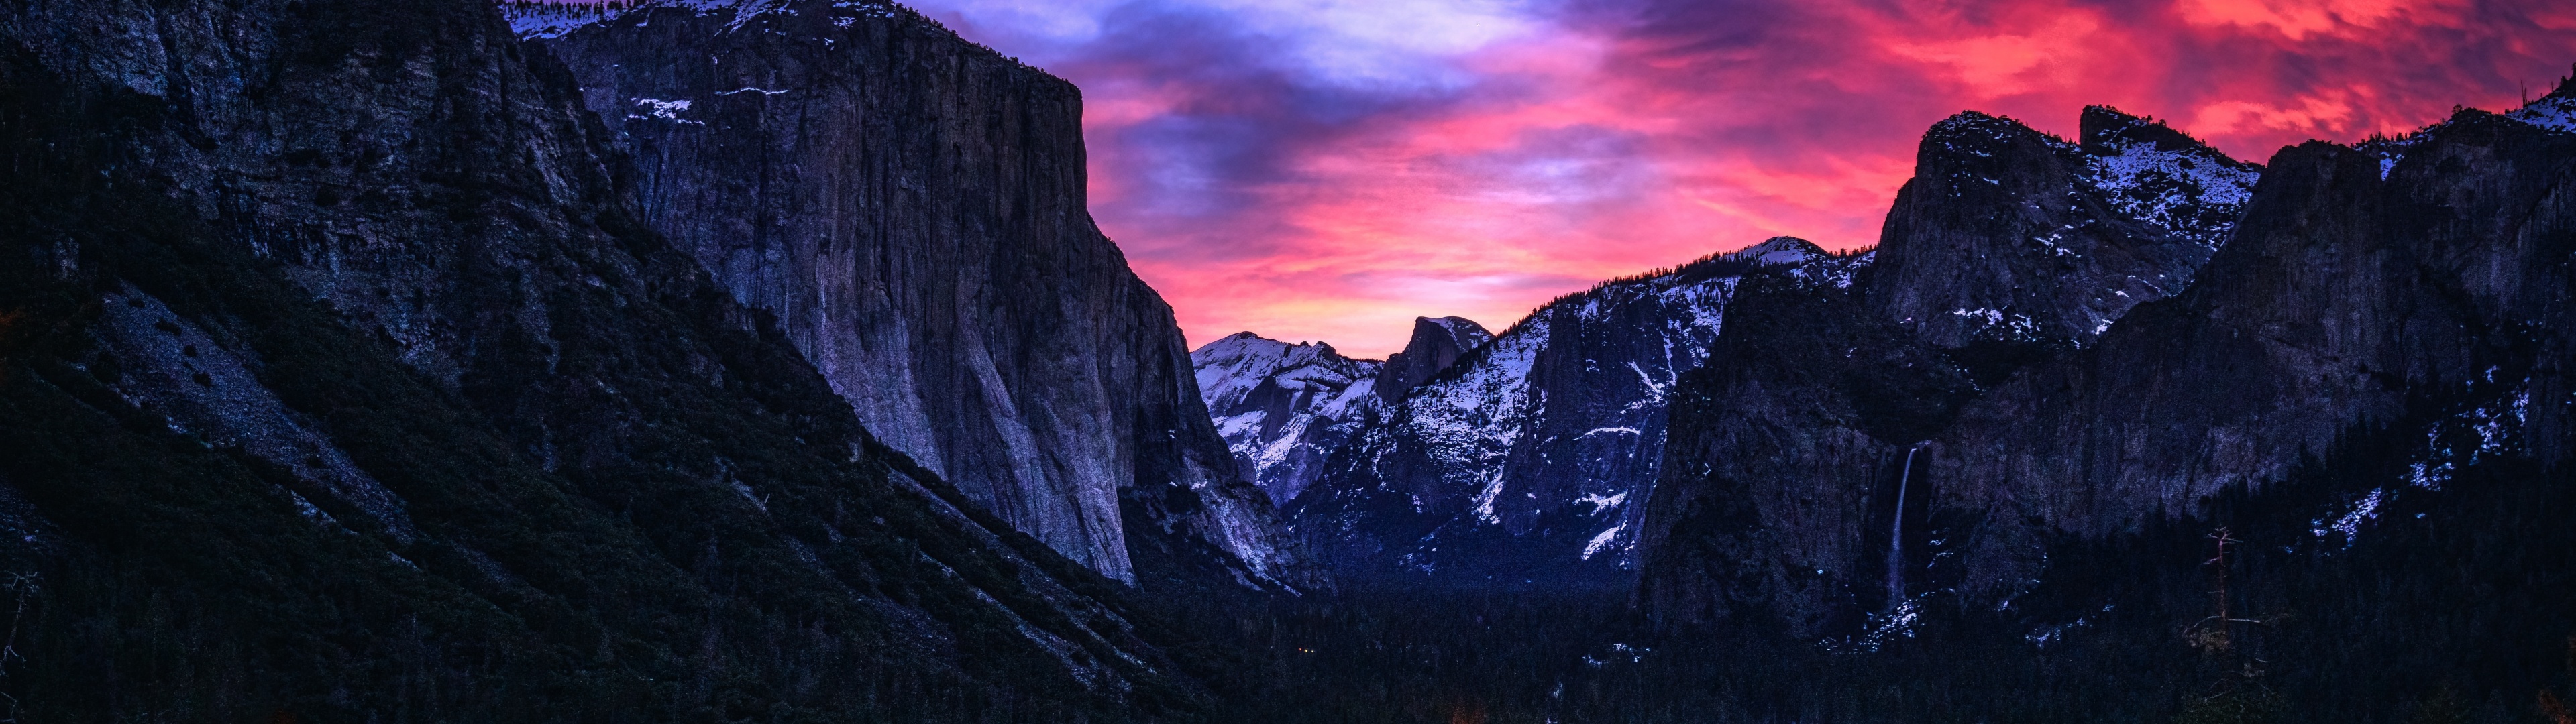 Bức hình nền về Vườn quốc gia Yosemite 4K với khung cảnh hoàng hôn tuyệt đẹp từ Tunnel View sẽ cho bạn được khám phá cảm giác tràn ngập trong sự tĩnh lặng và đong đầy sức sống của thiên nhiên. Tận hưởng những muộn phiền từ công việc bằng cách thưởng thức những bức hình nền thiên nhiên tuyệt đẹp của Yosemite.